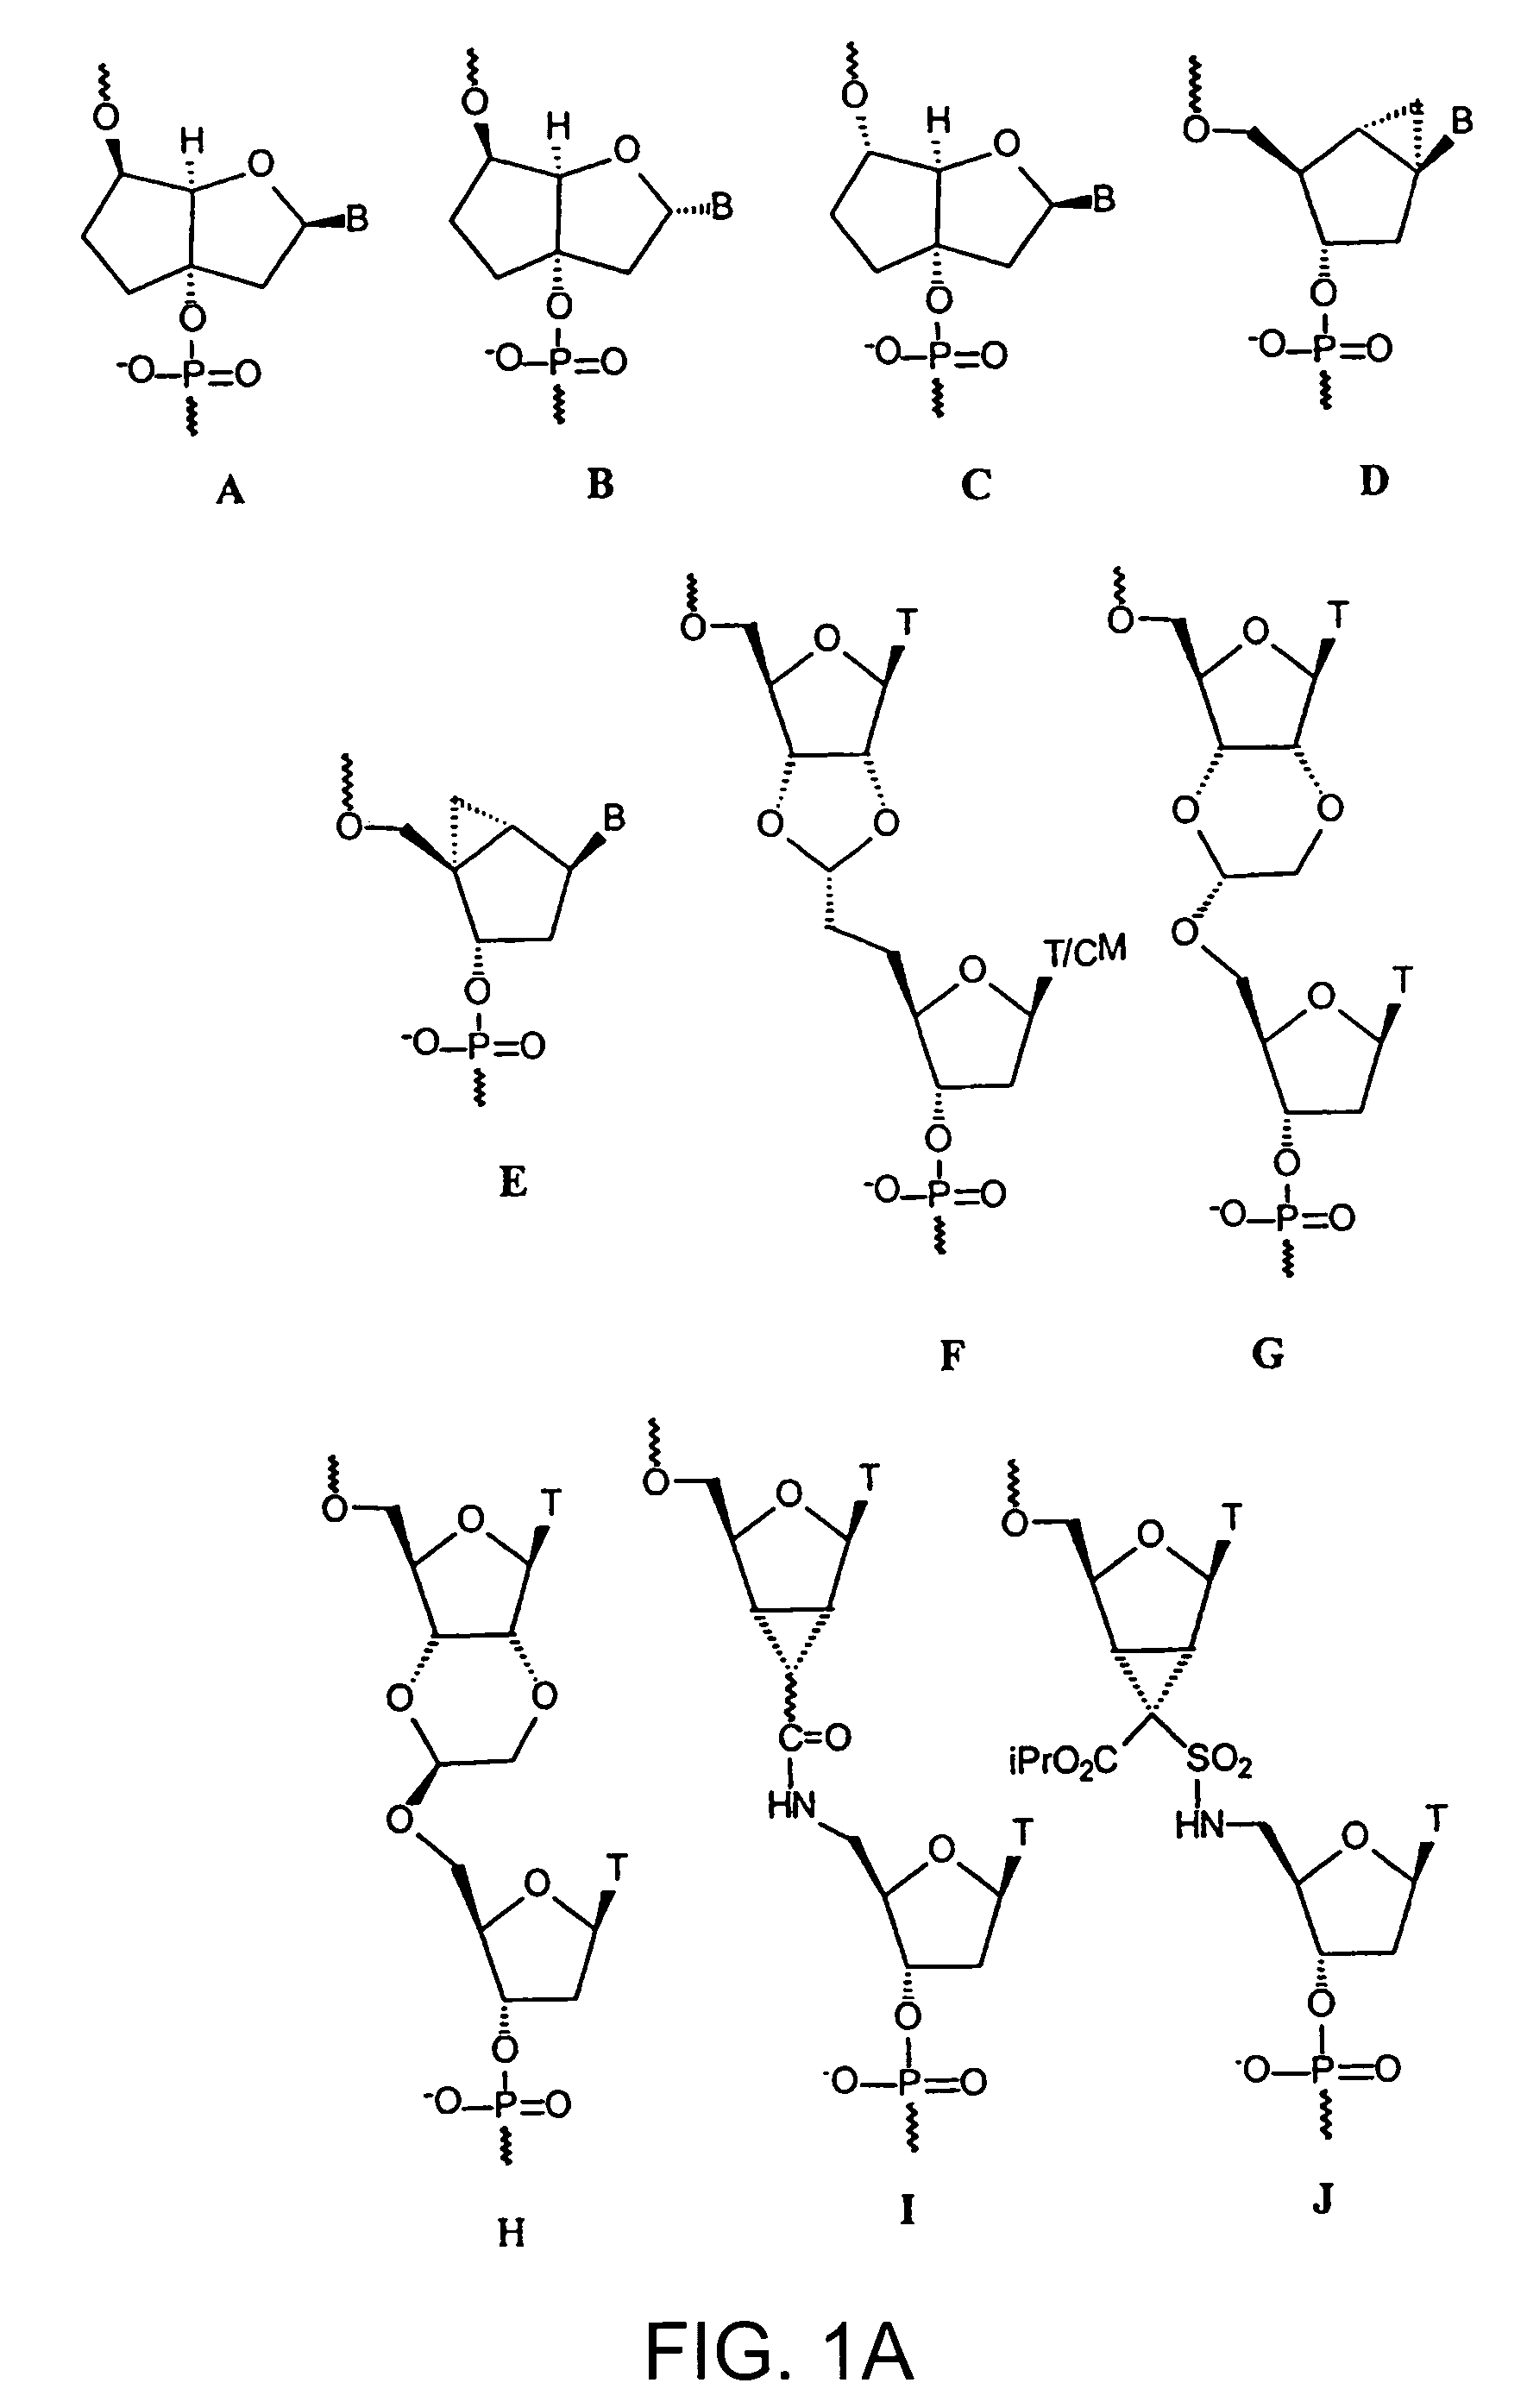 Oligonucleotide analogues